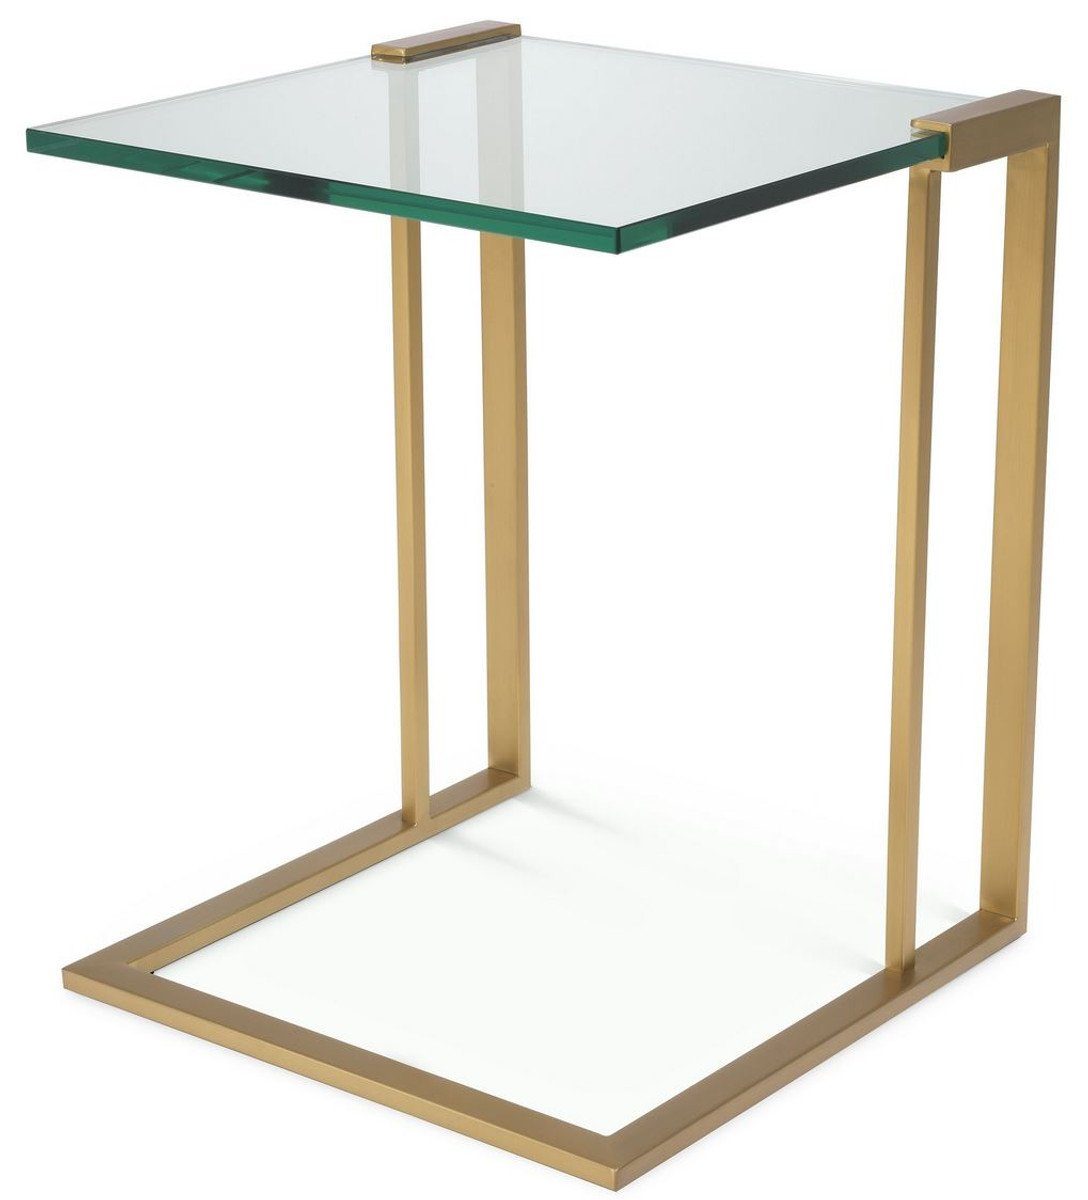 Casa Padrino Beistelltisch Luxus Beistelltisch Messingfarben 45 x 45,5 x H. 56,5 cm - Edelstahl Tisch mit Glasplatte - Luxus Möbel